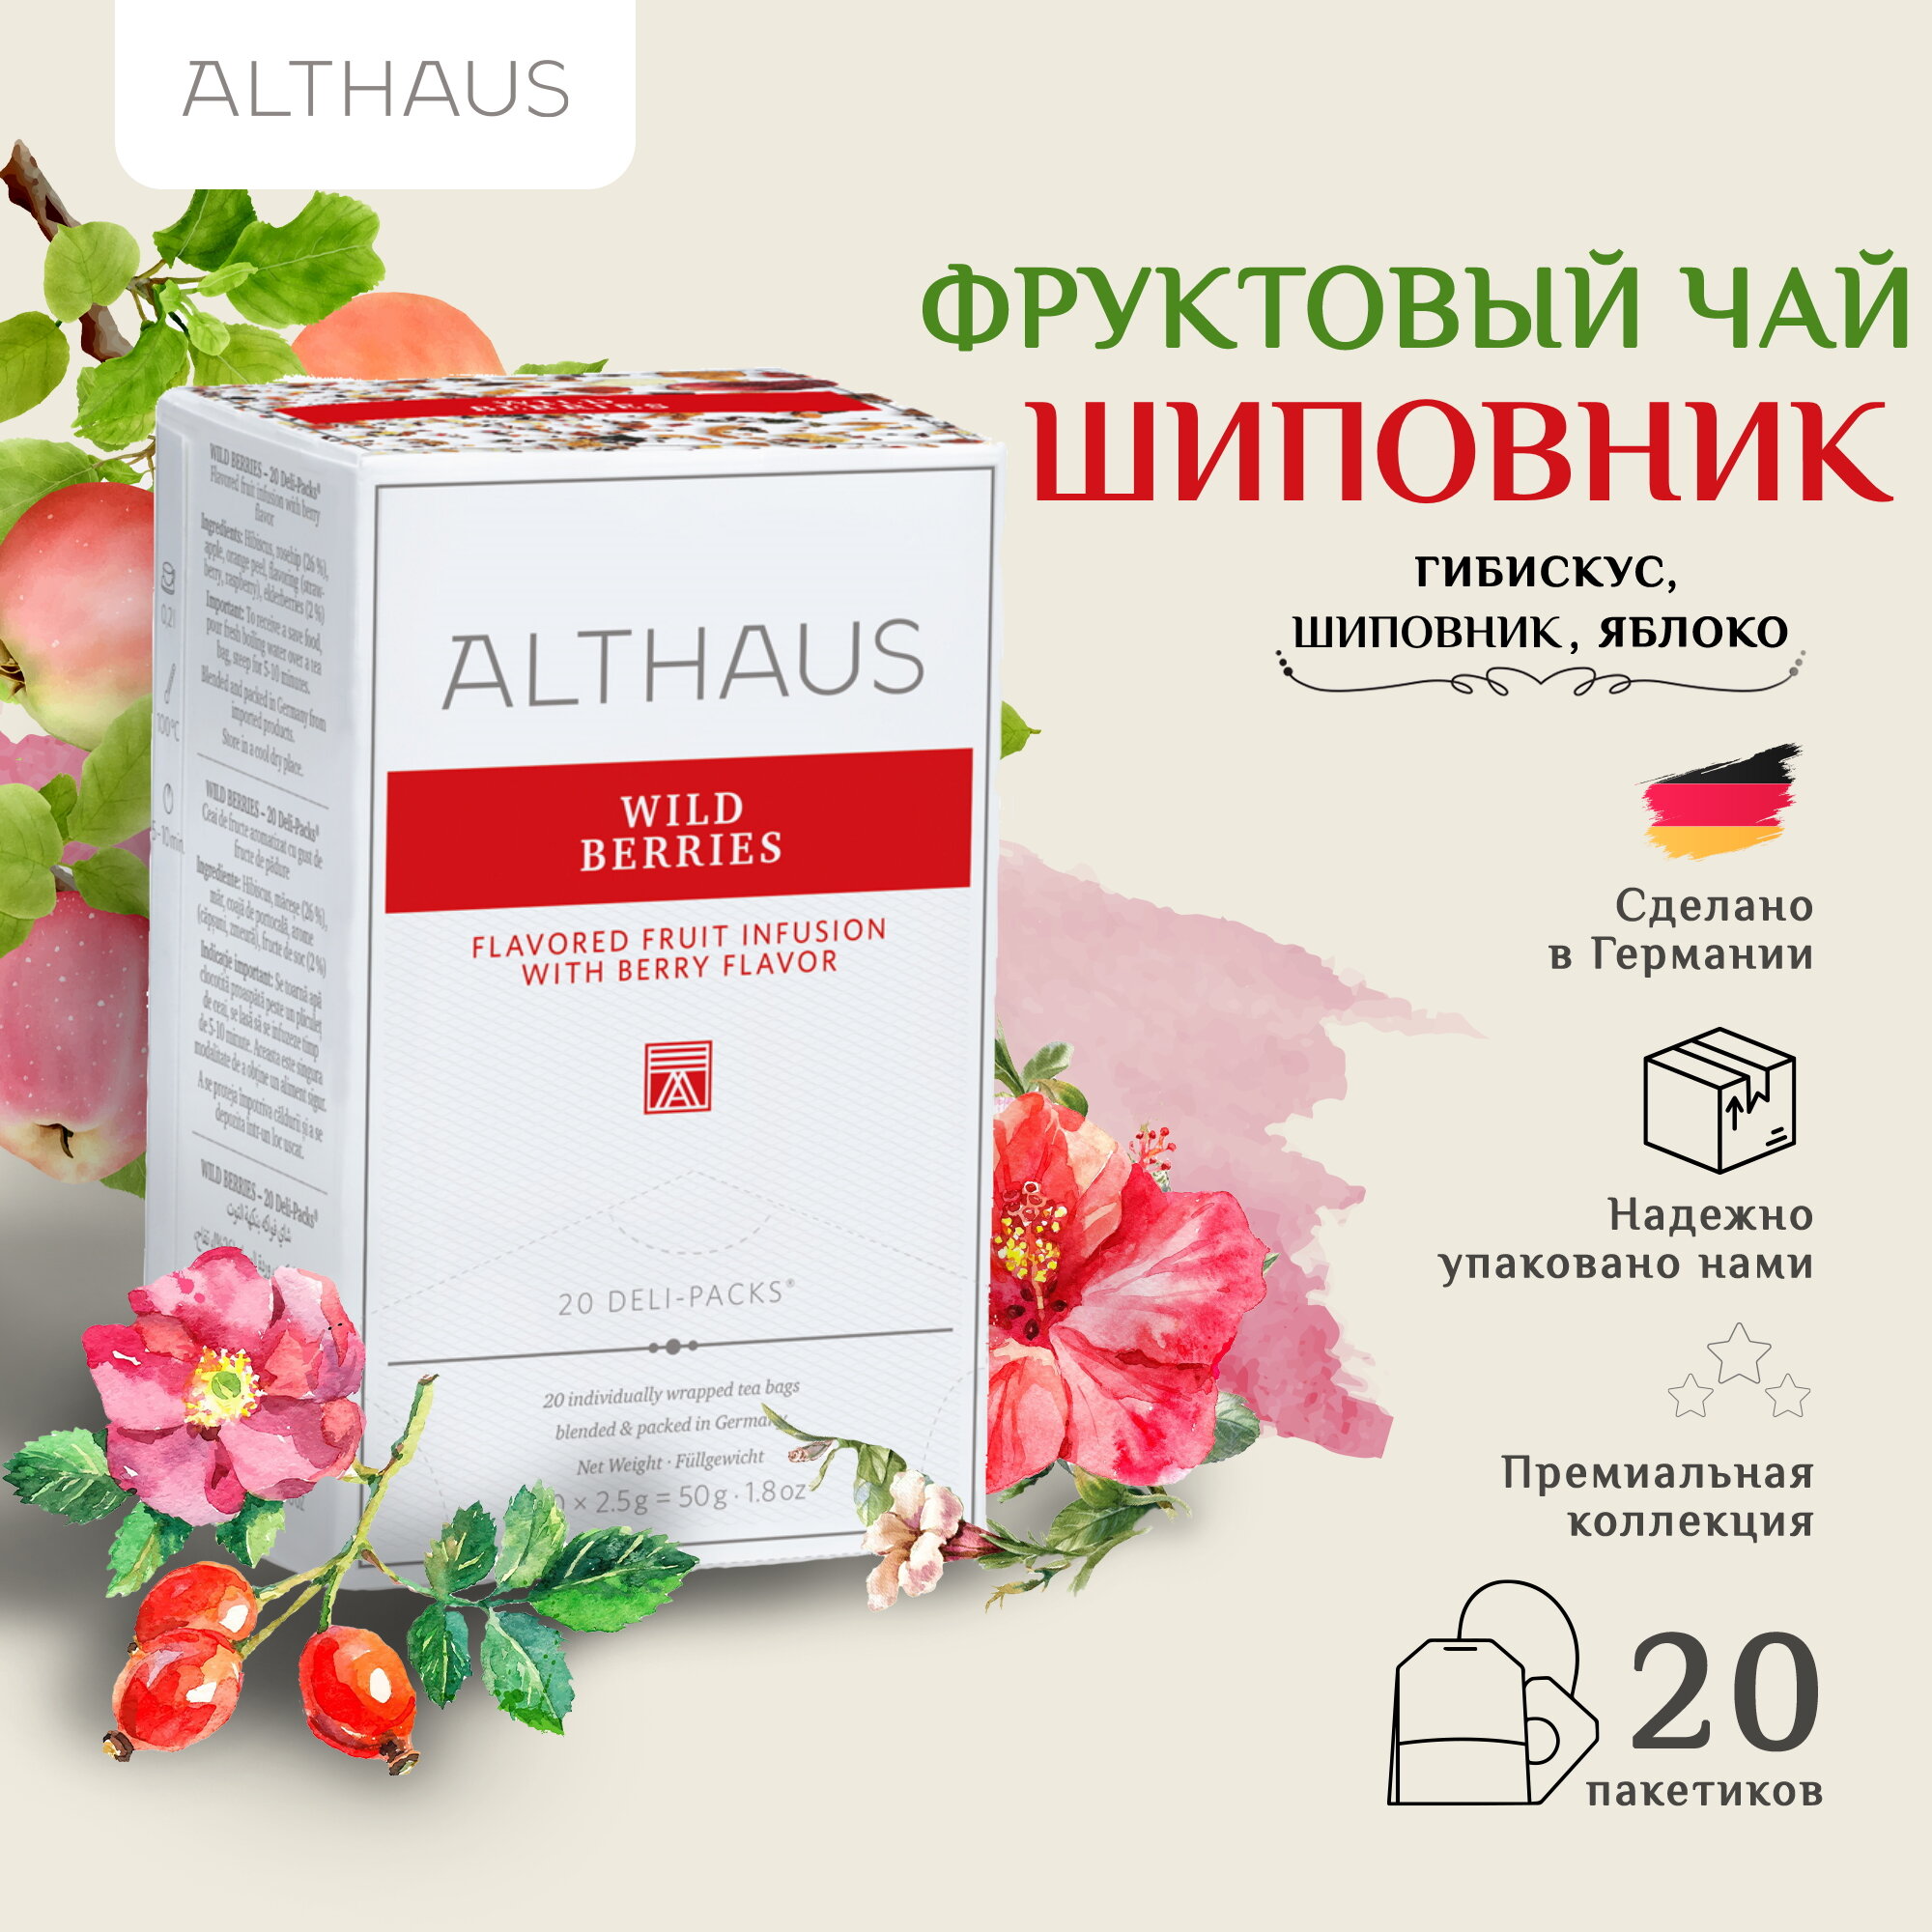 Althaus Wild Berries, Дикие Ягоды чай фруктовый в пакетиках, 20 шт